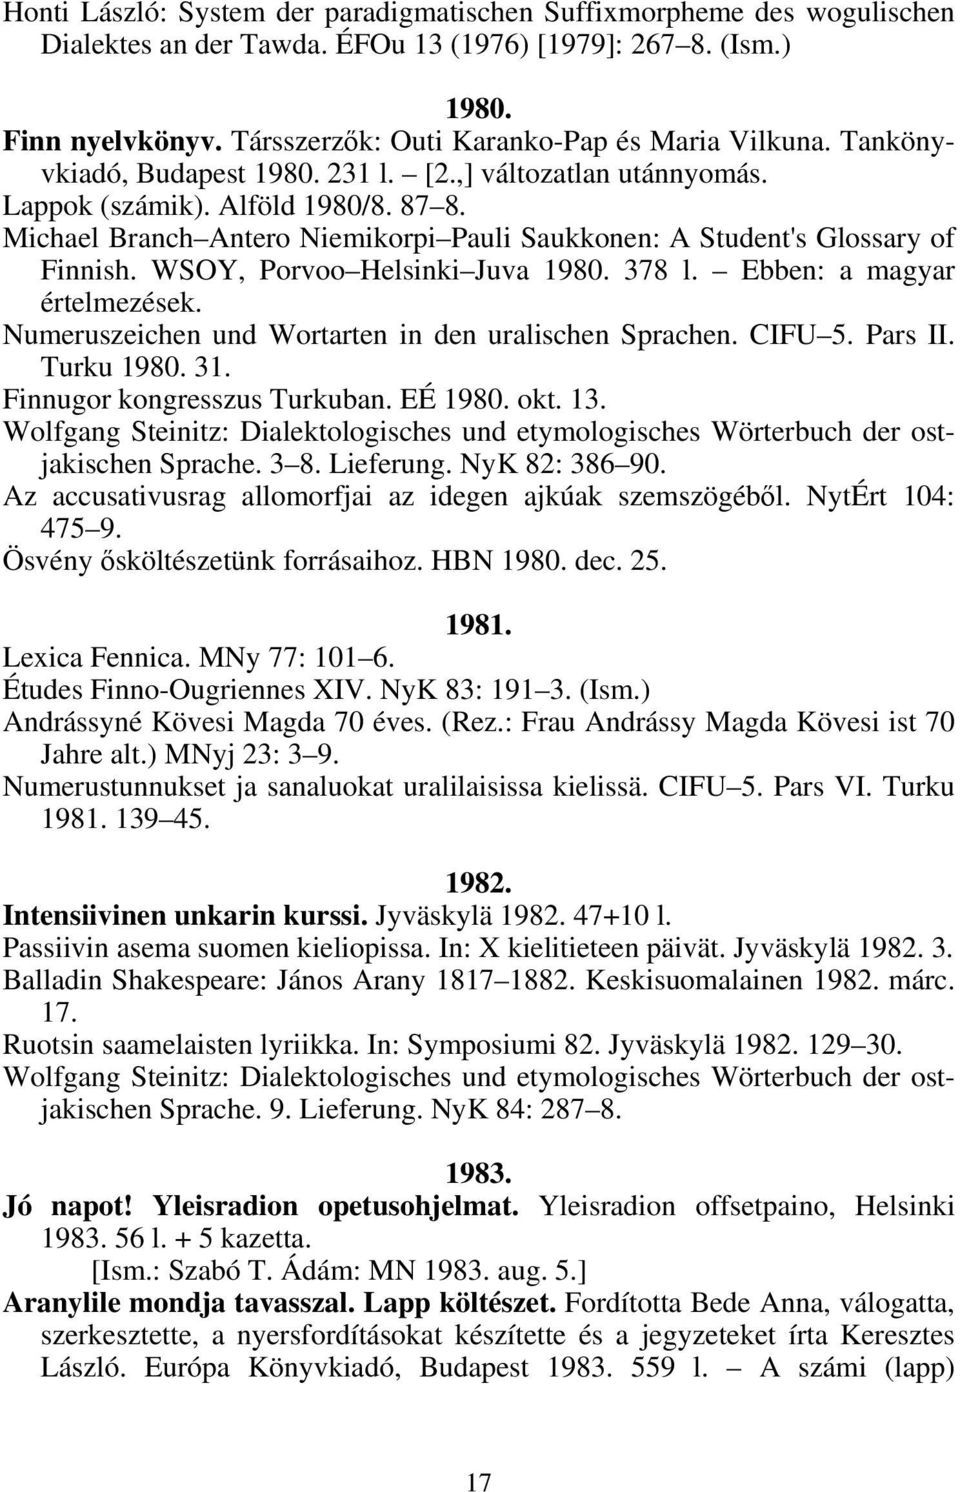 Michael Branch Antero Niemikorpi Pauli Saukkonen: A Student's Glossary of Finnish. WSOY, Porvoo Helsinki Juva 1980. 378 l. Ebben: a magyar értelmezések.